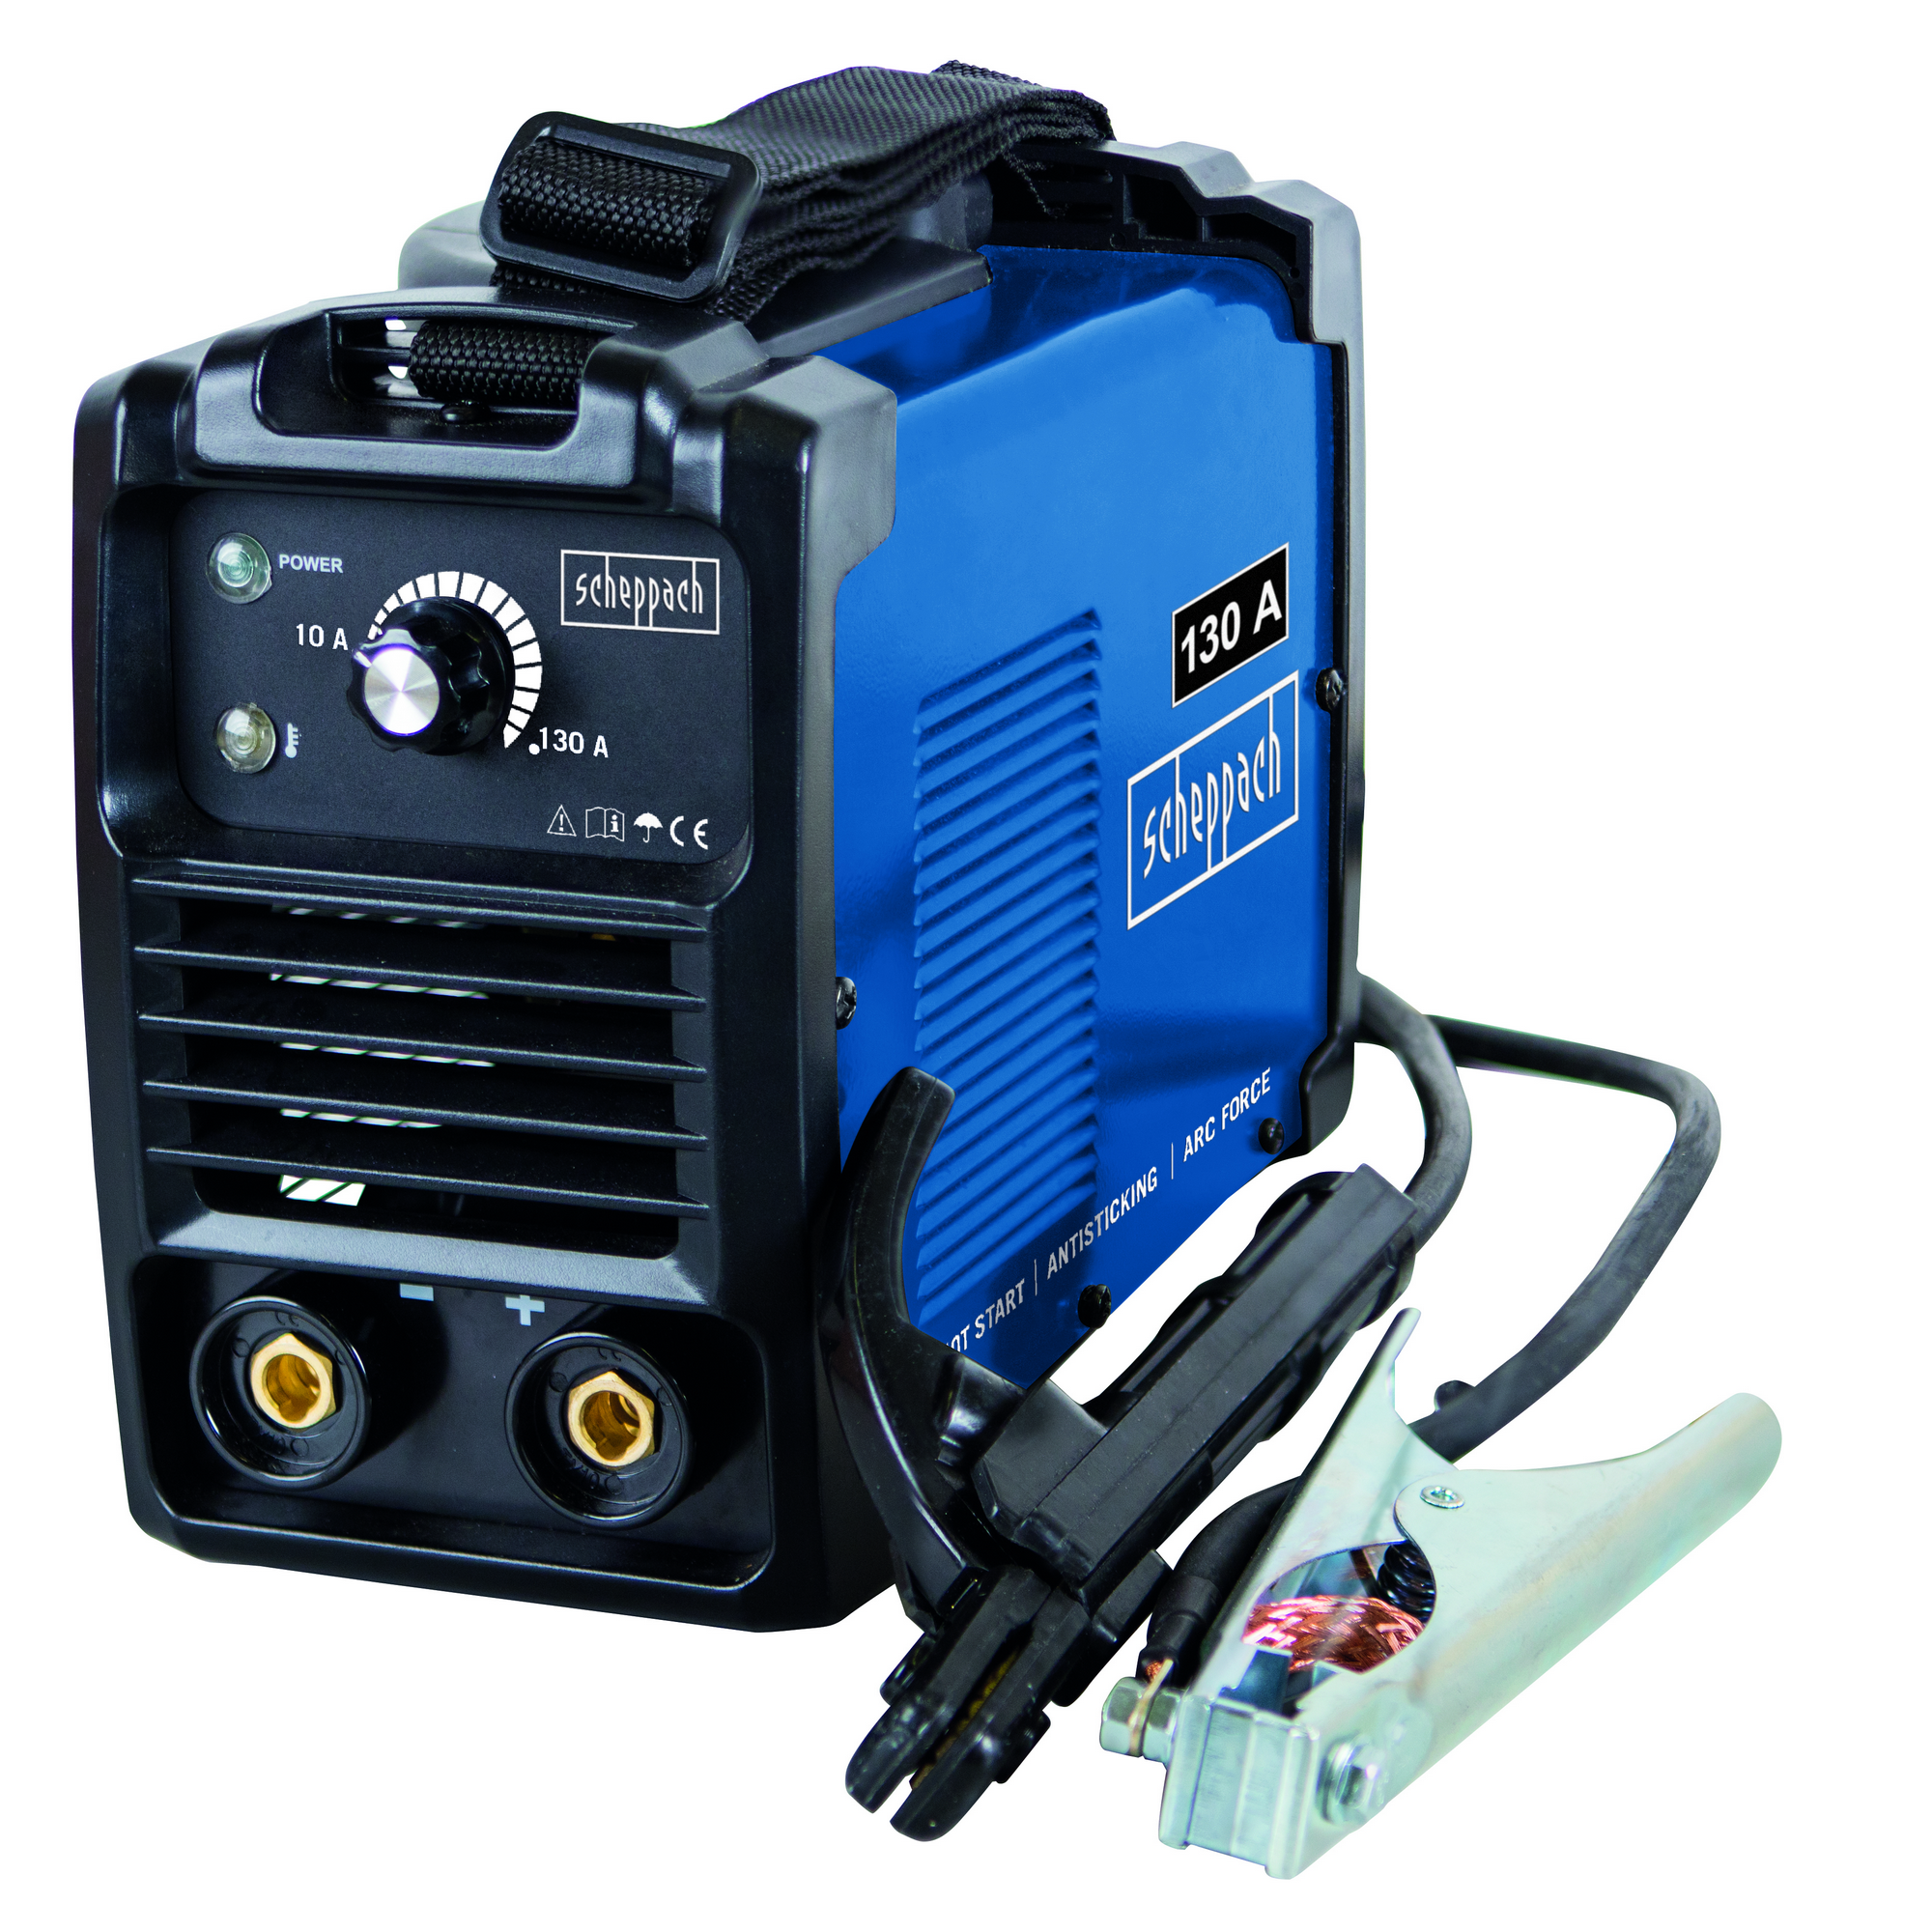 Inverter-Schweißgerät 'WSE1100' blau/schwarz 230 V, 20-160 A + product picture